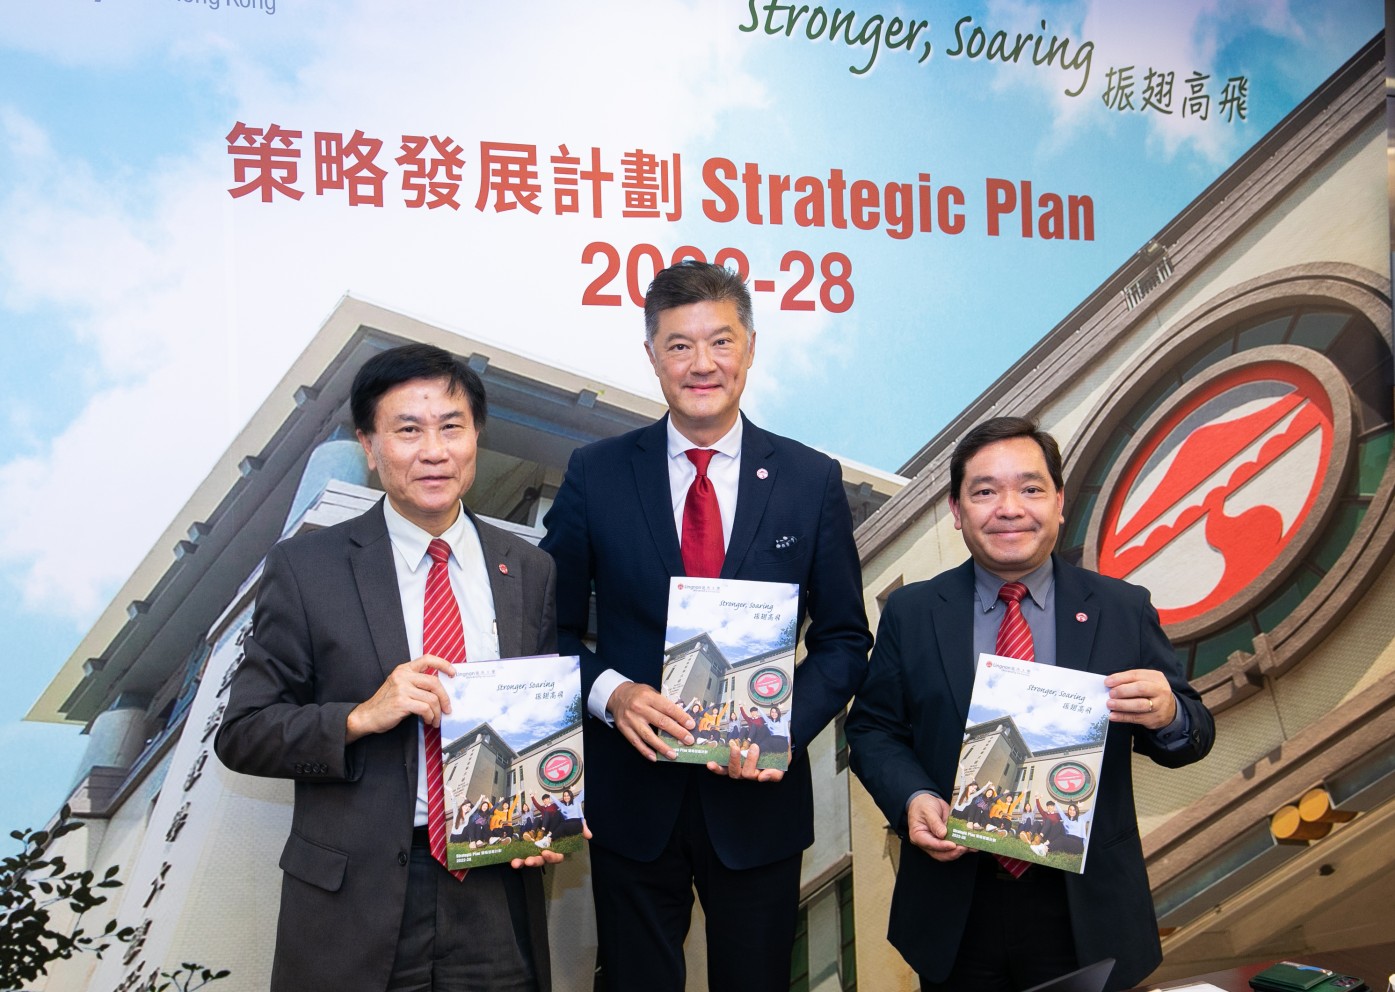 嶺大校長鄭國漢教授（左）、嶺大校董會主席姚祖輝先生（中）、嶺大副校長莫家豪教授（右）簡介嶺大的《2022-28年度策略發展計劃》。